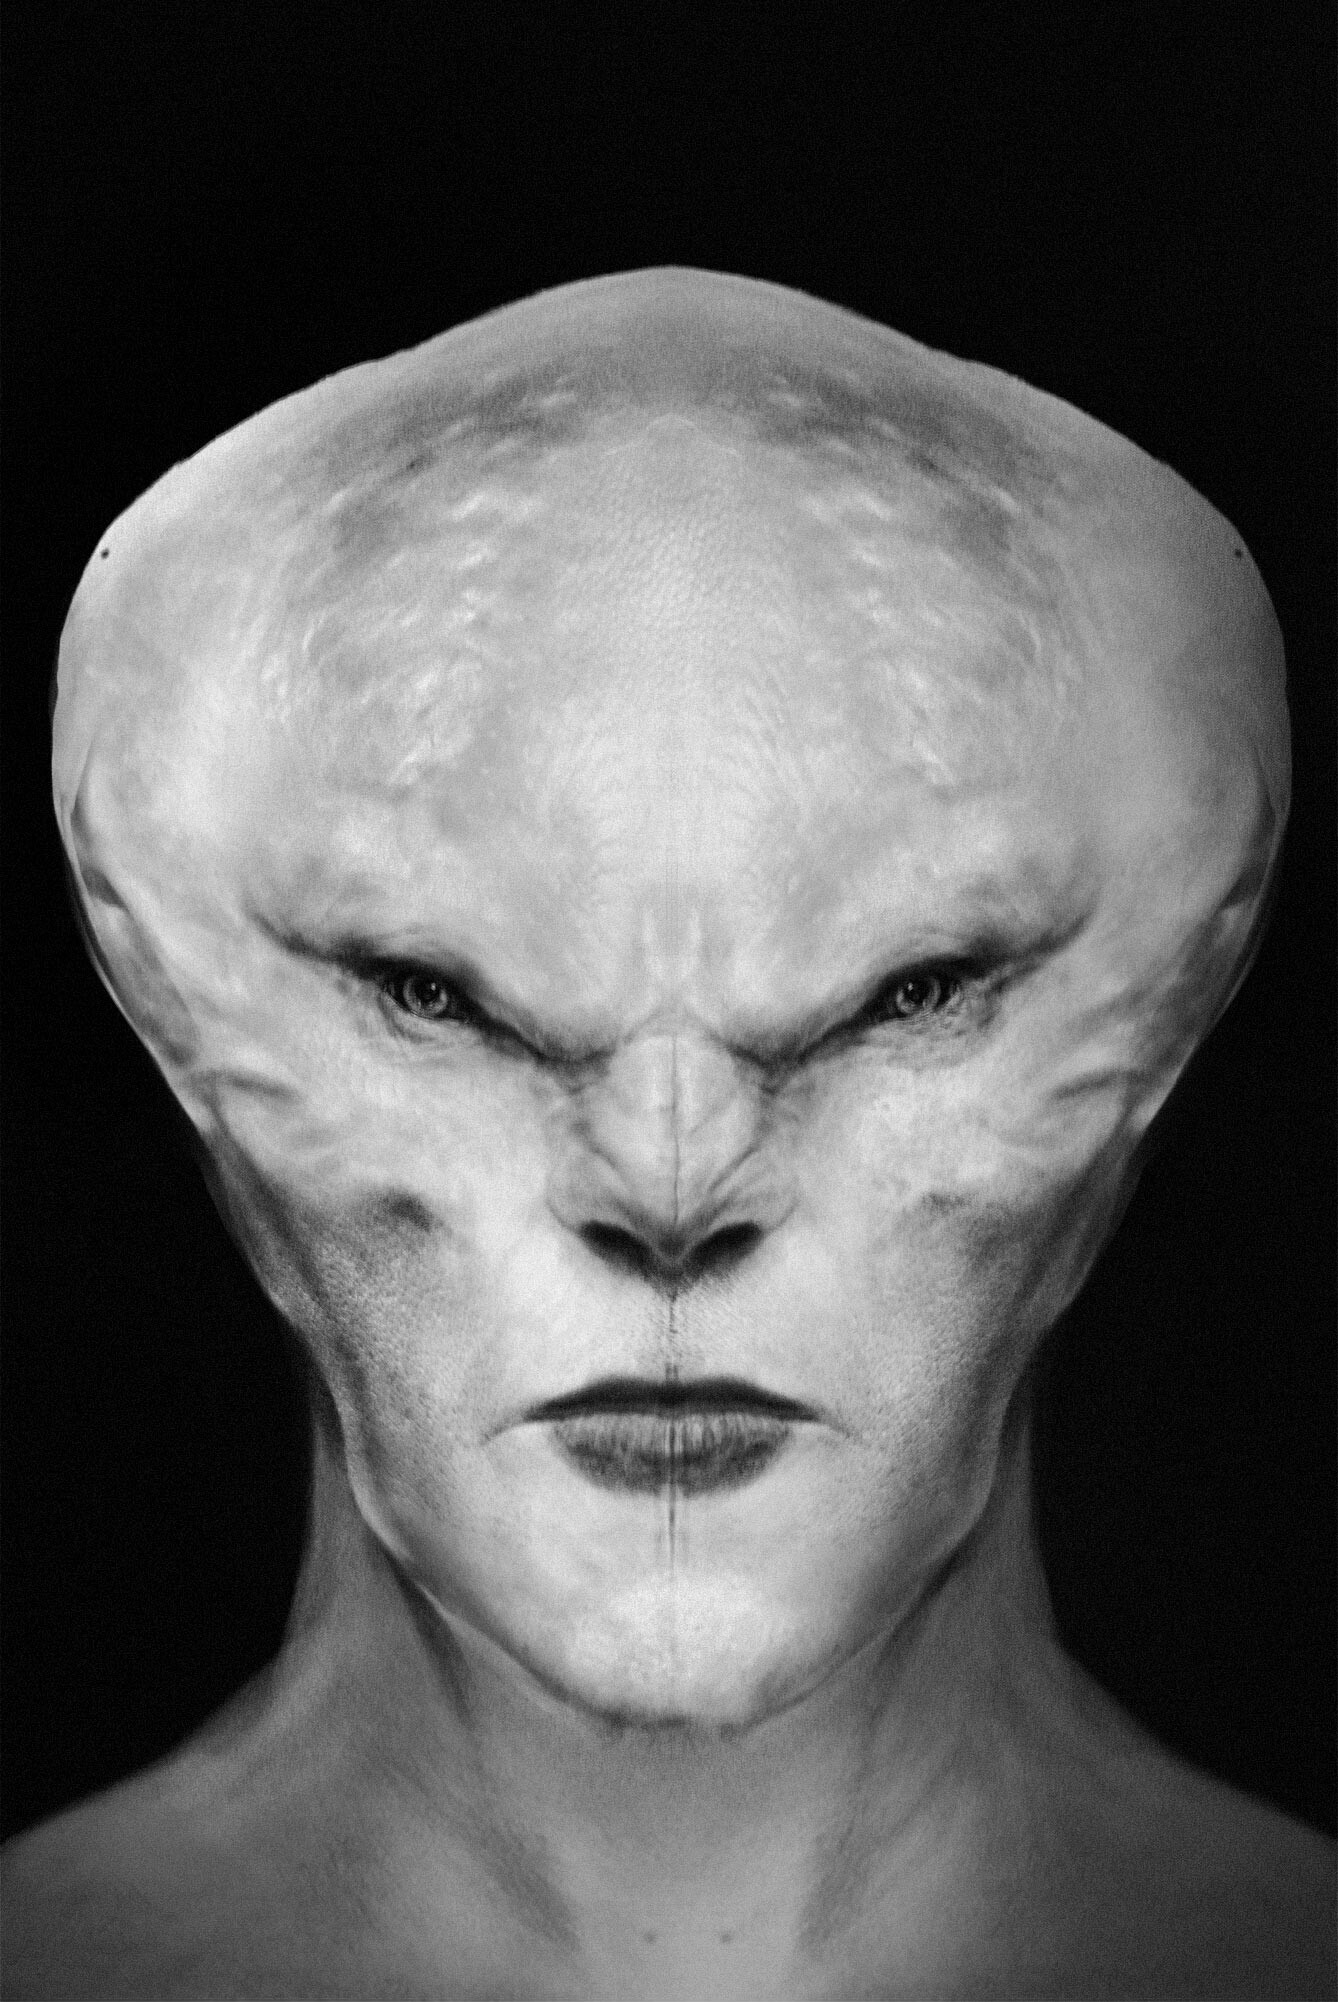 white hybrid alien